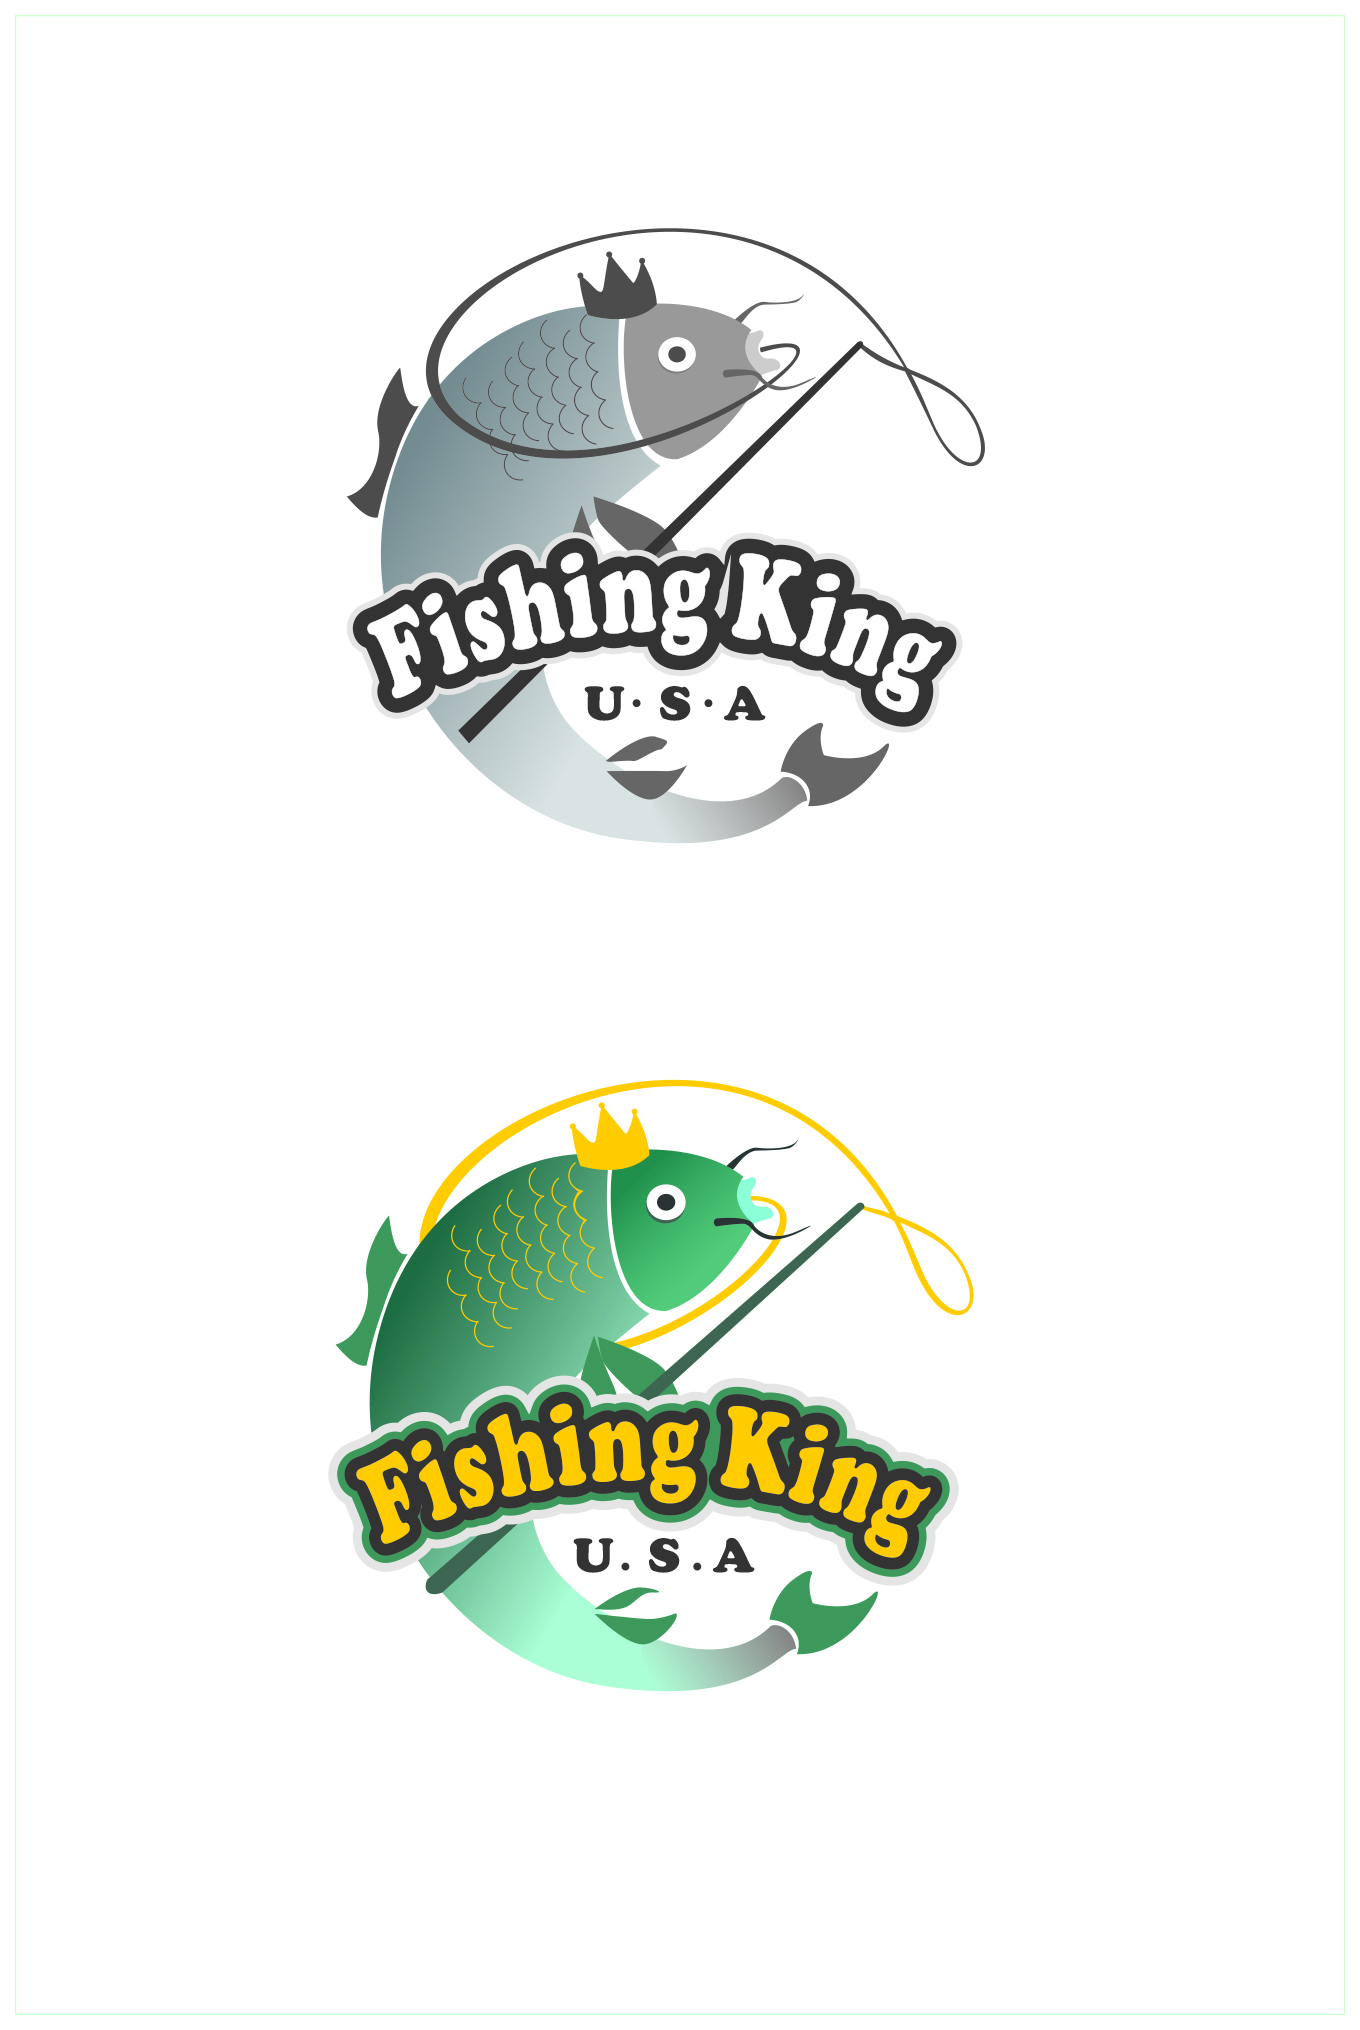 钓鱼logo图标大全图片